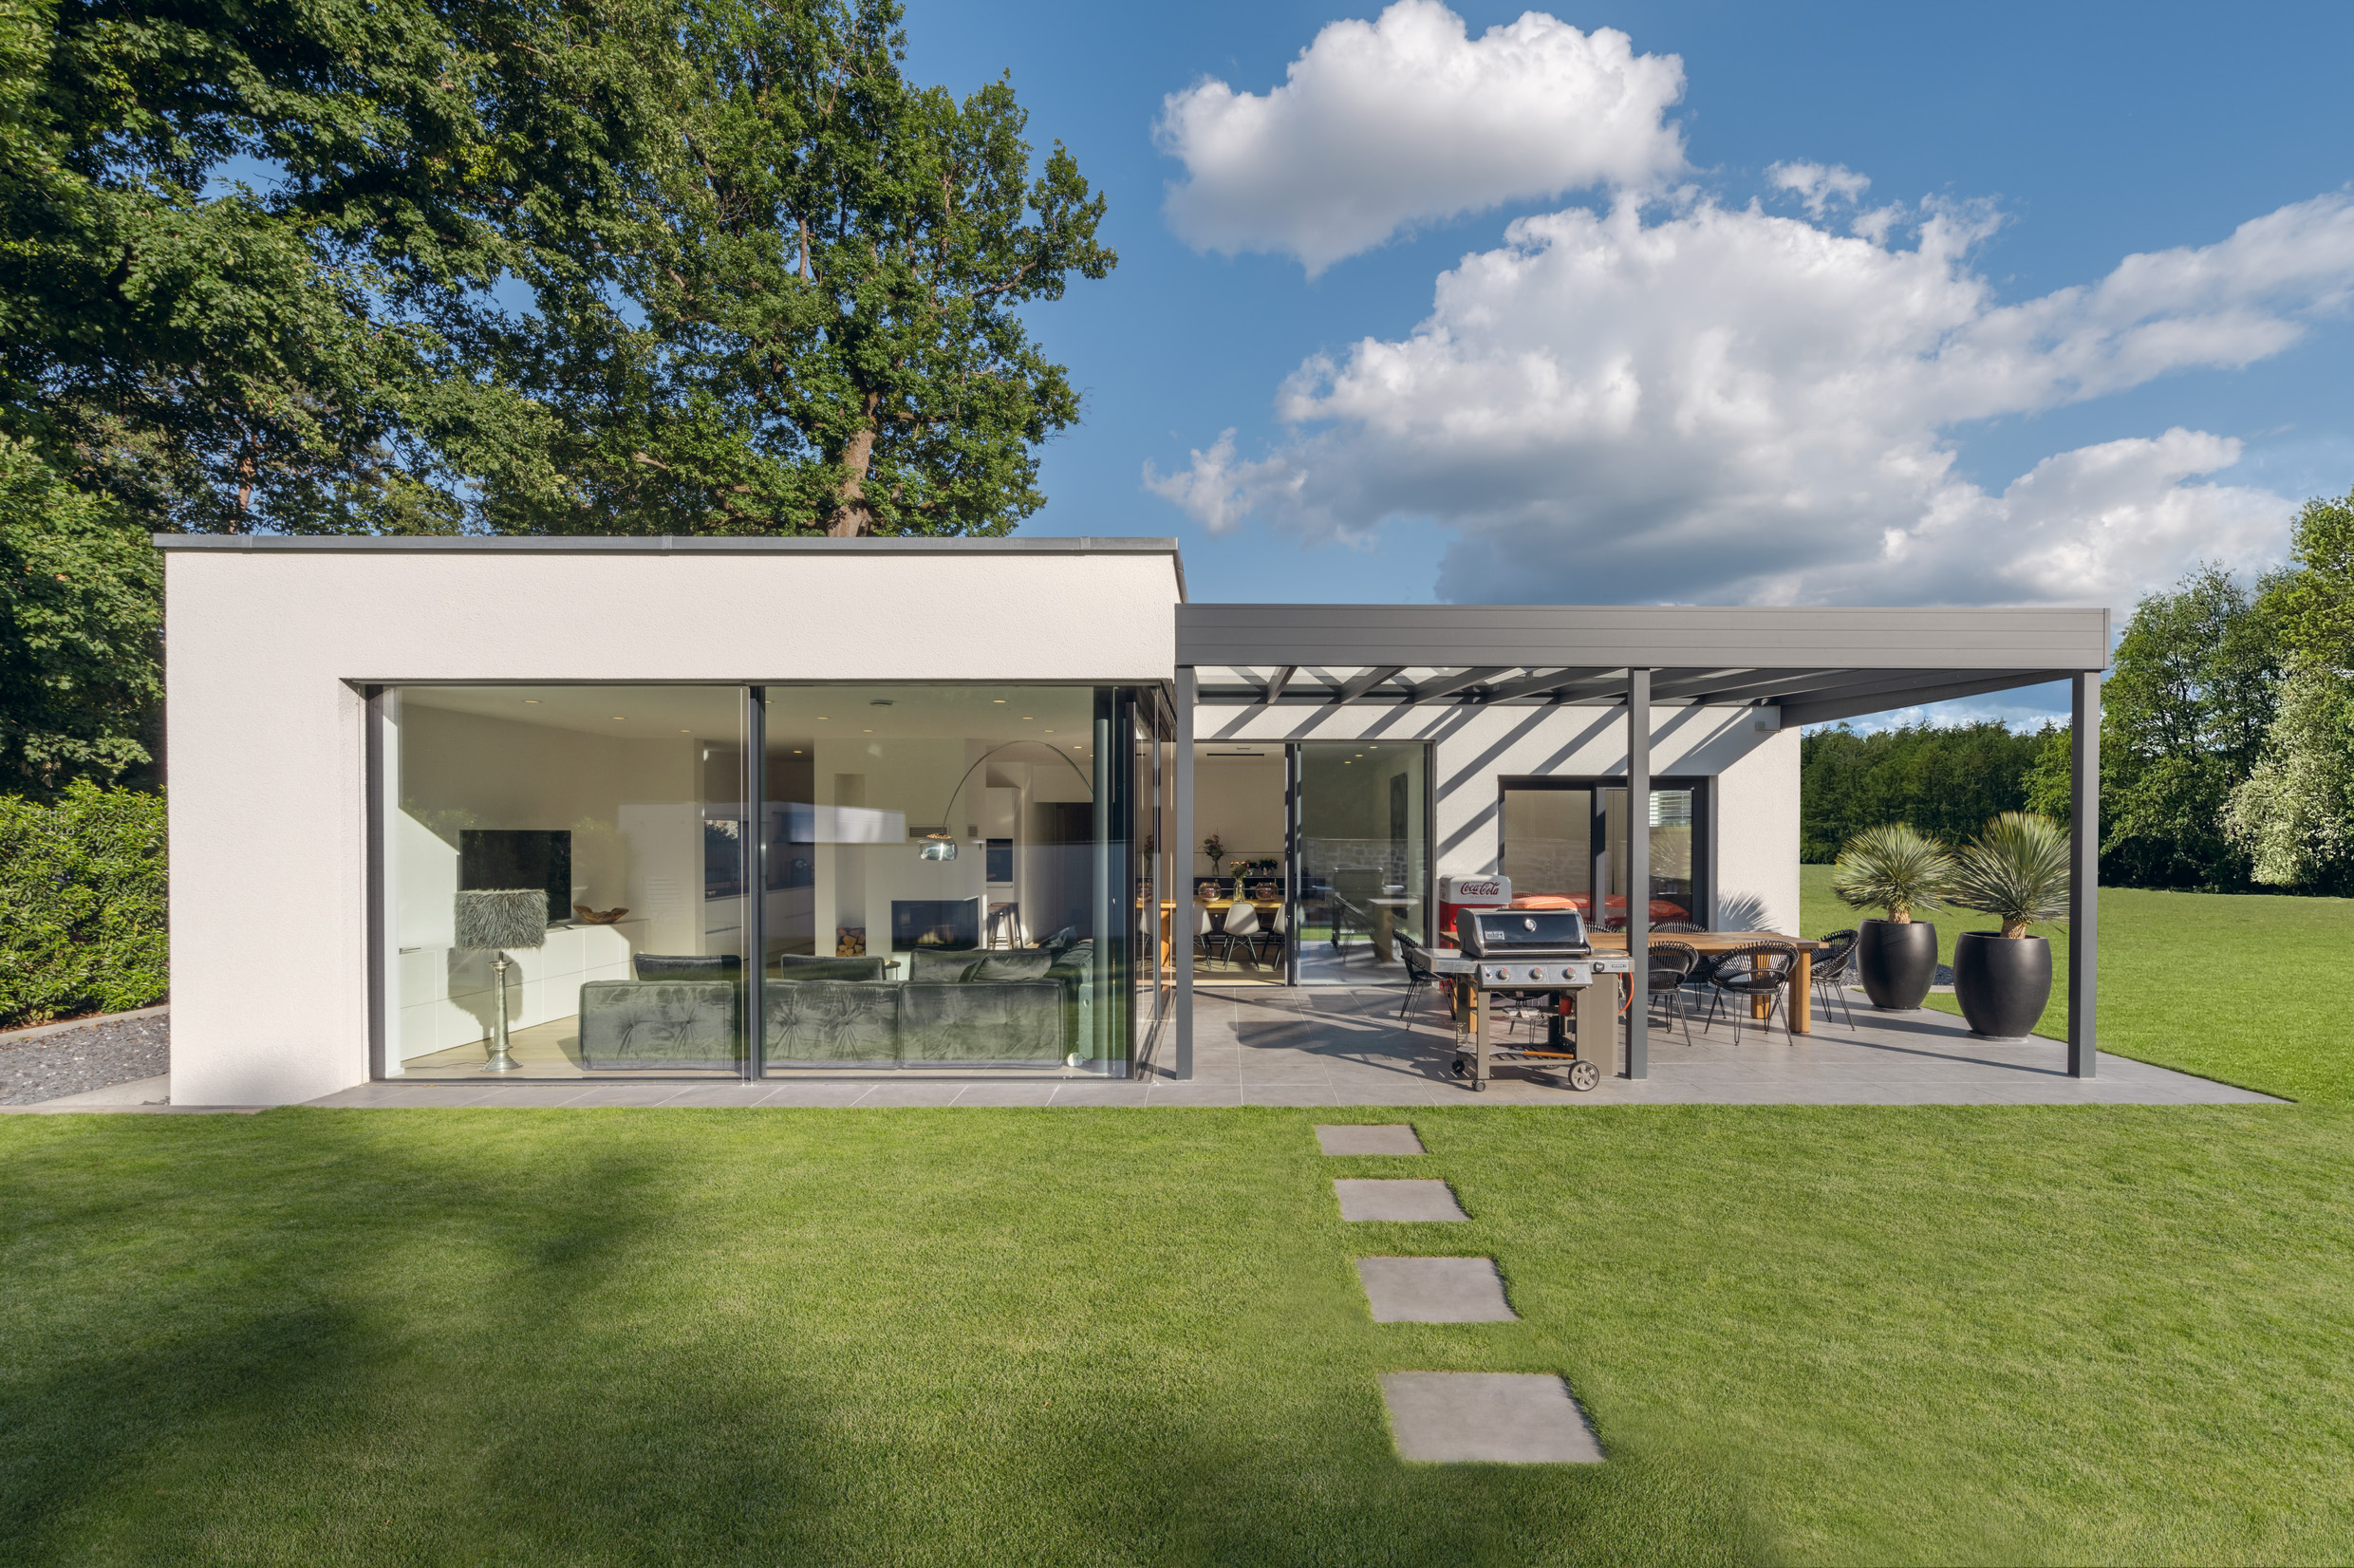 ein Fertighaus Bungalow als frei geplantes Architektenhaus bietet modernen Wohnkomfort und fließende Übergänge in den Außenbereich